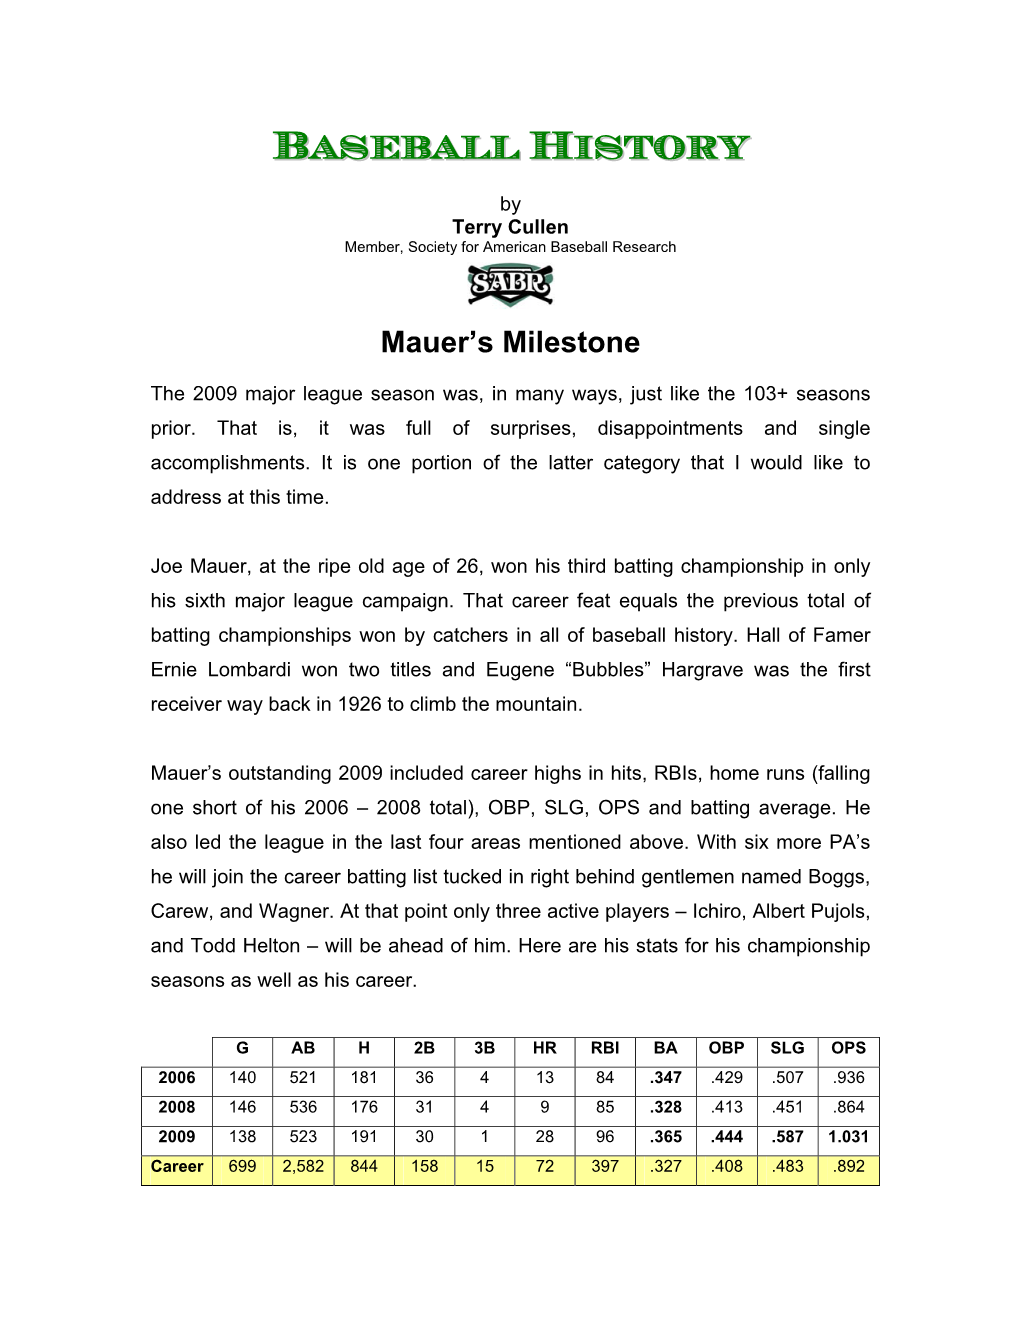 Mauer's Milestones